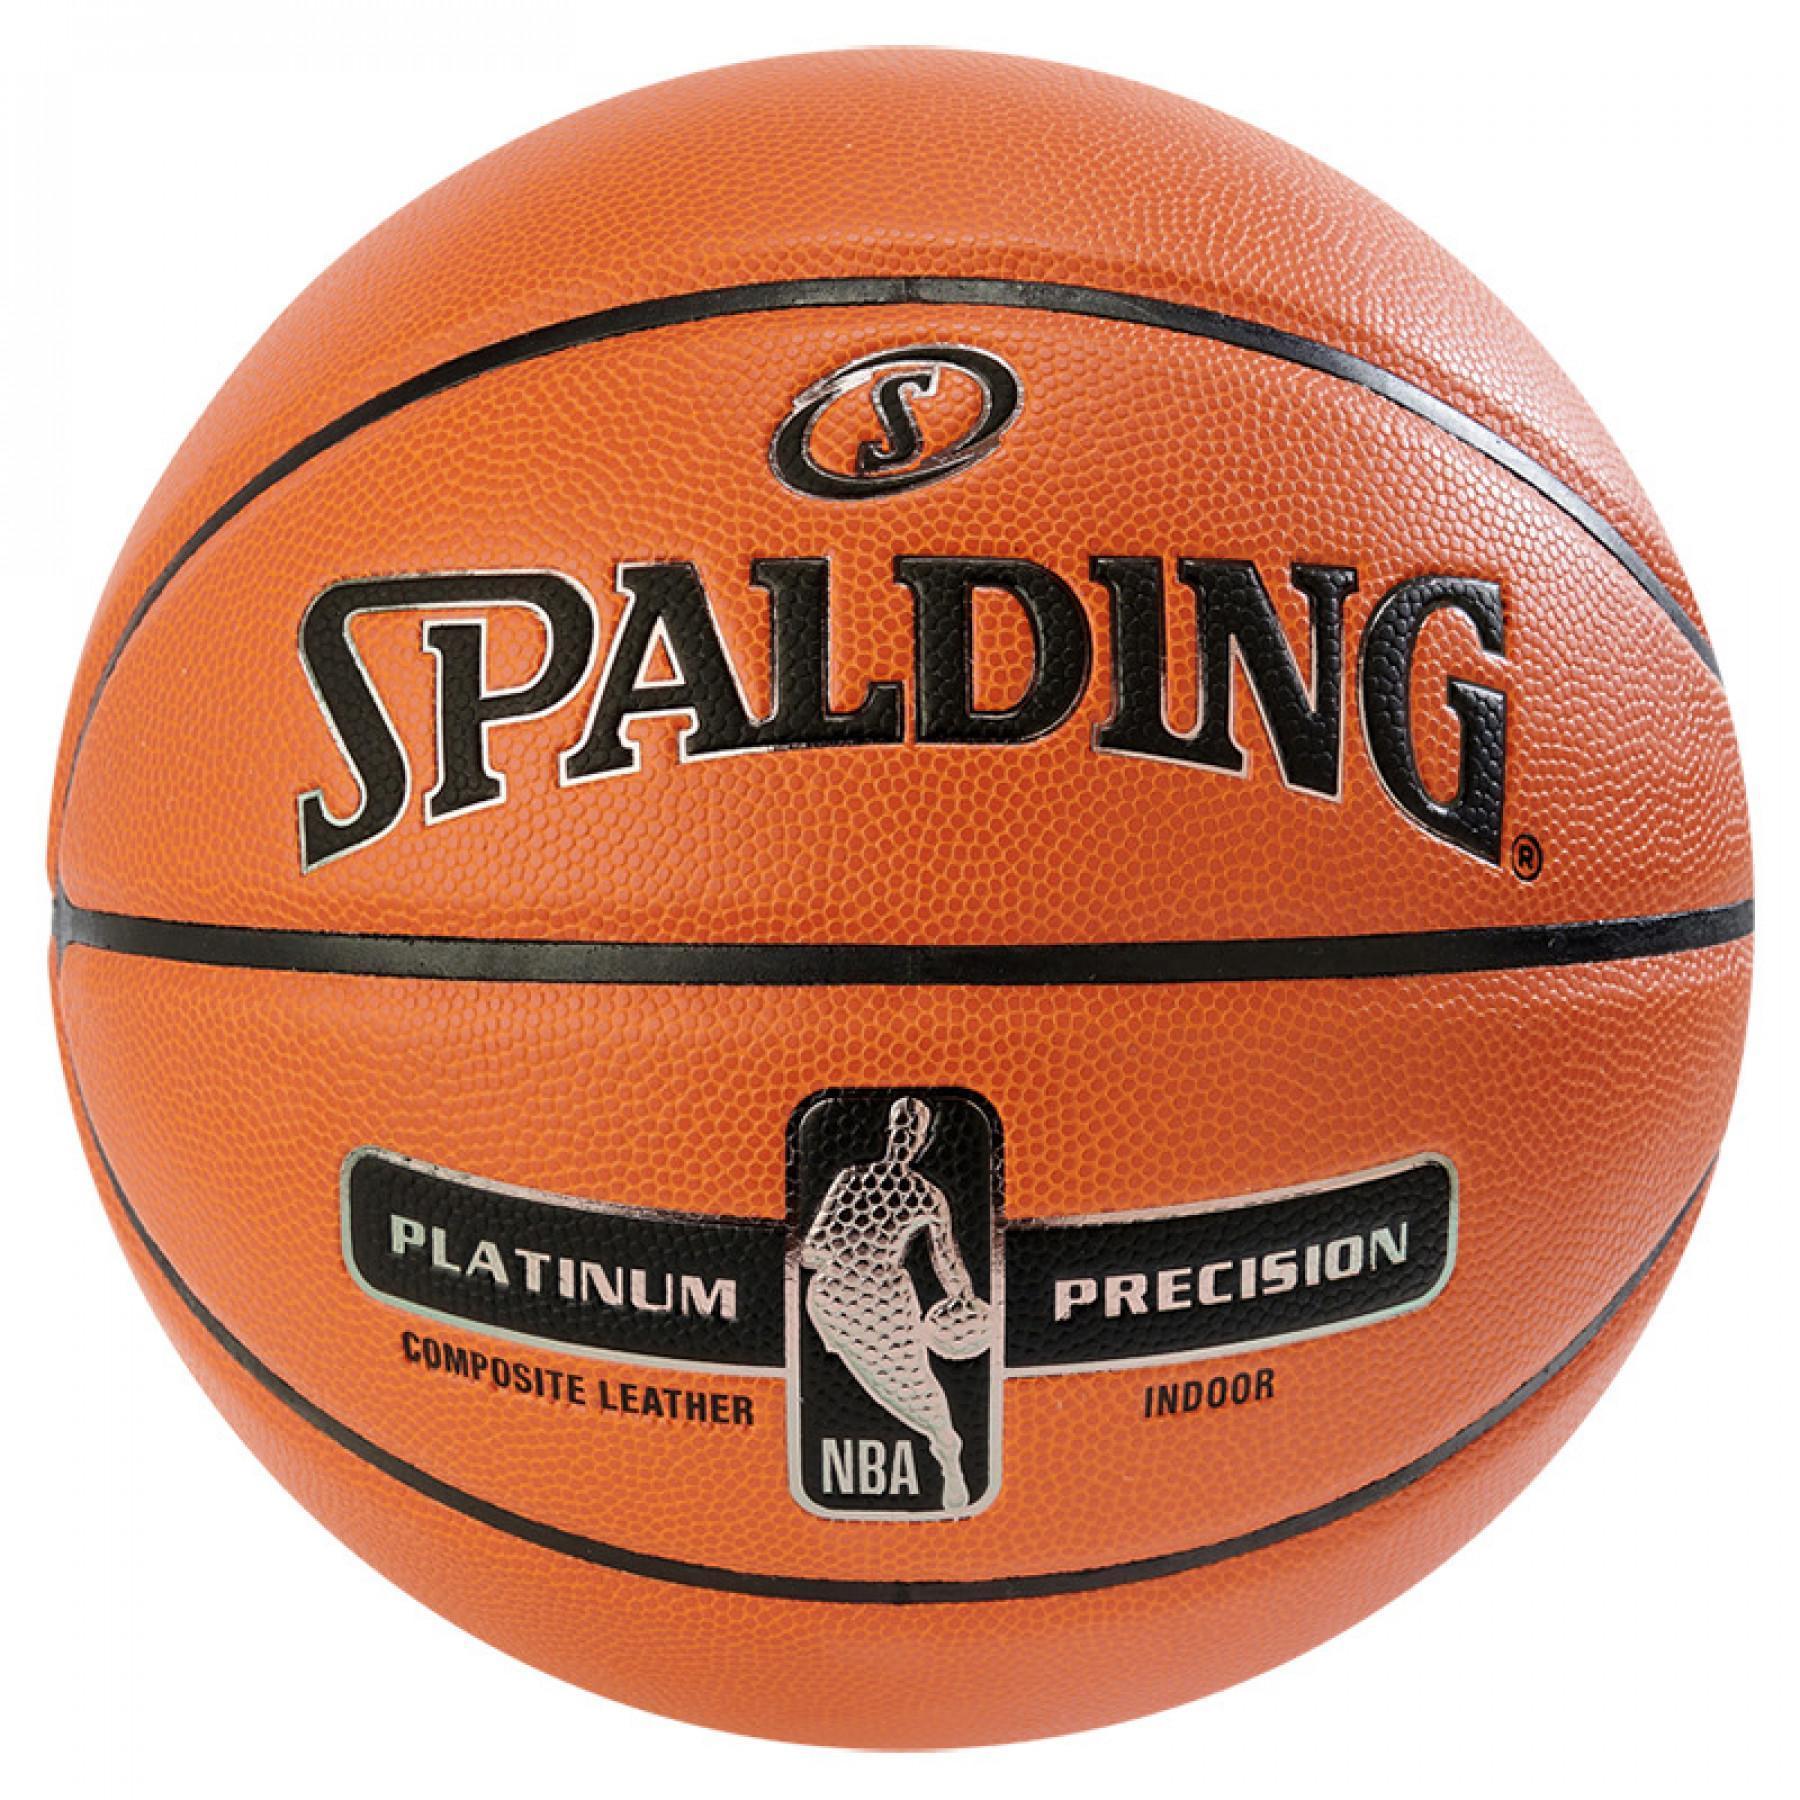 Ballong Spalding NBA Platinum Precision (76-307z)